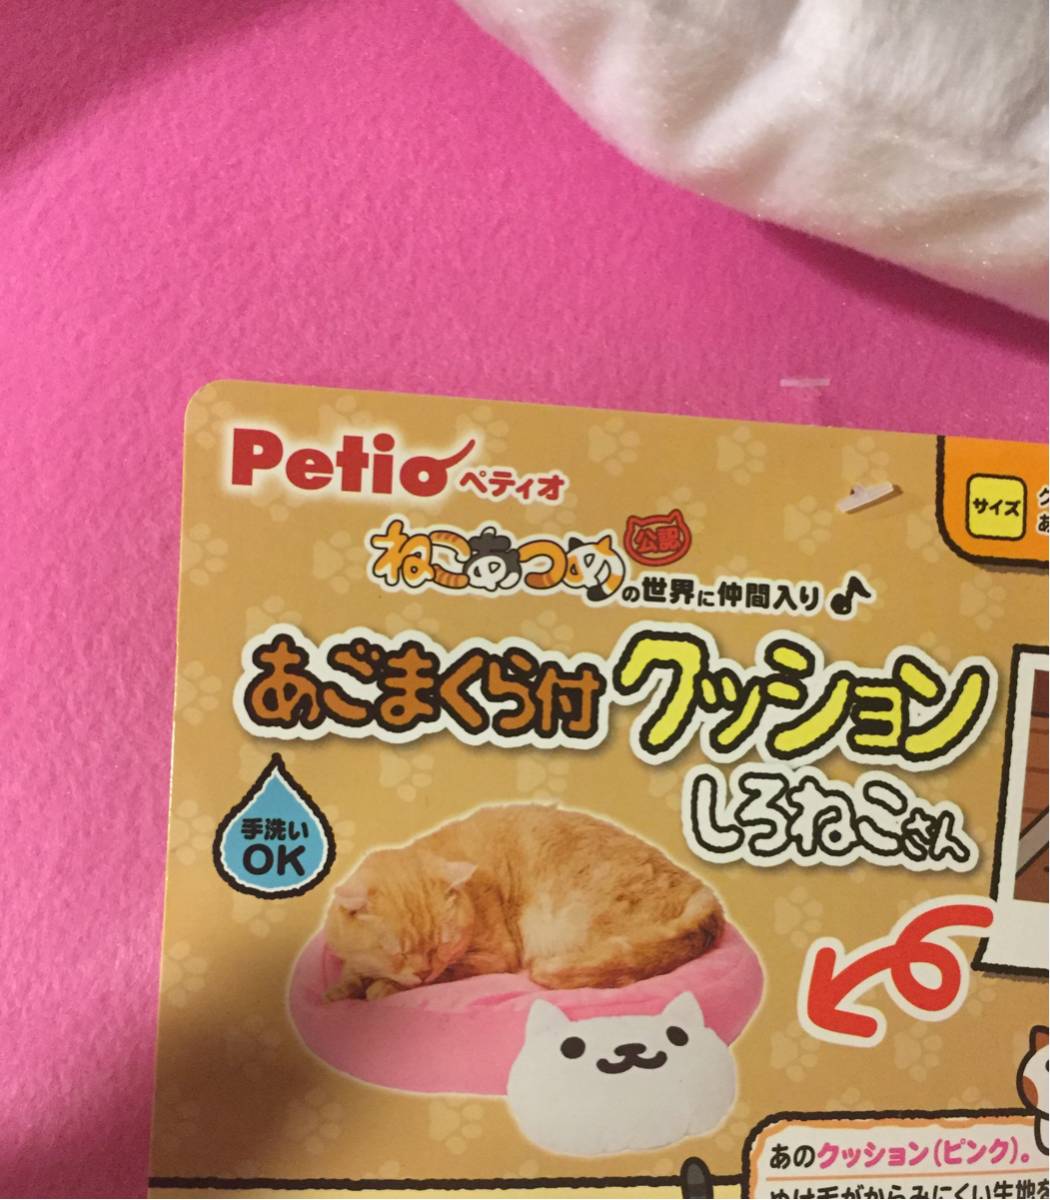 shi... san розовый petiopetio..... подушка для подбородка есть подушка подушка кошка игрушка bed холод . меры кошка новый товар 